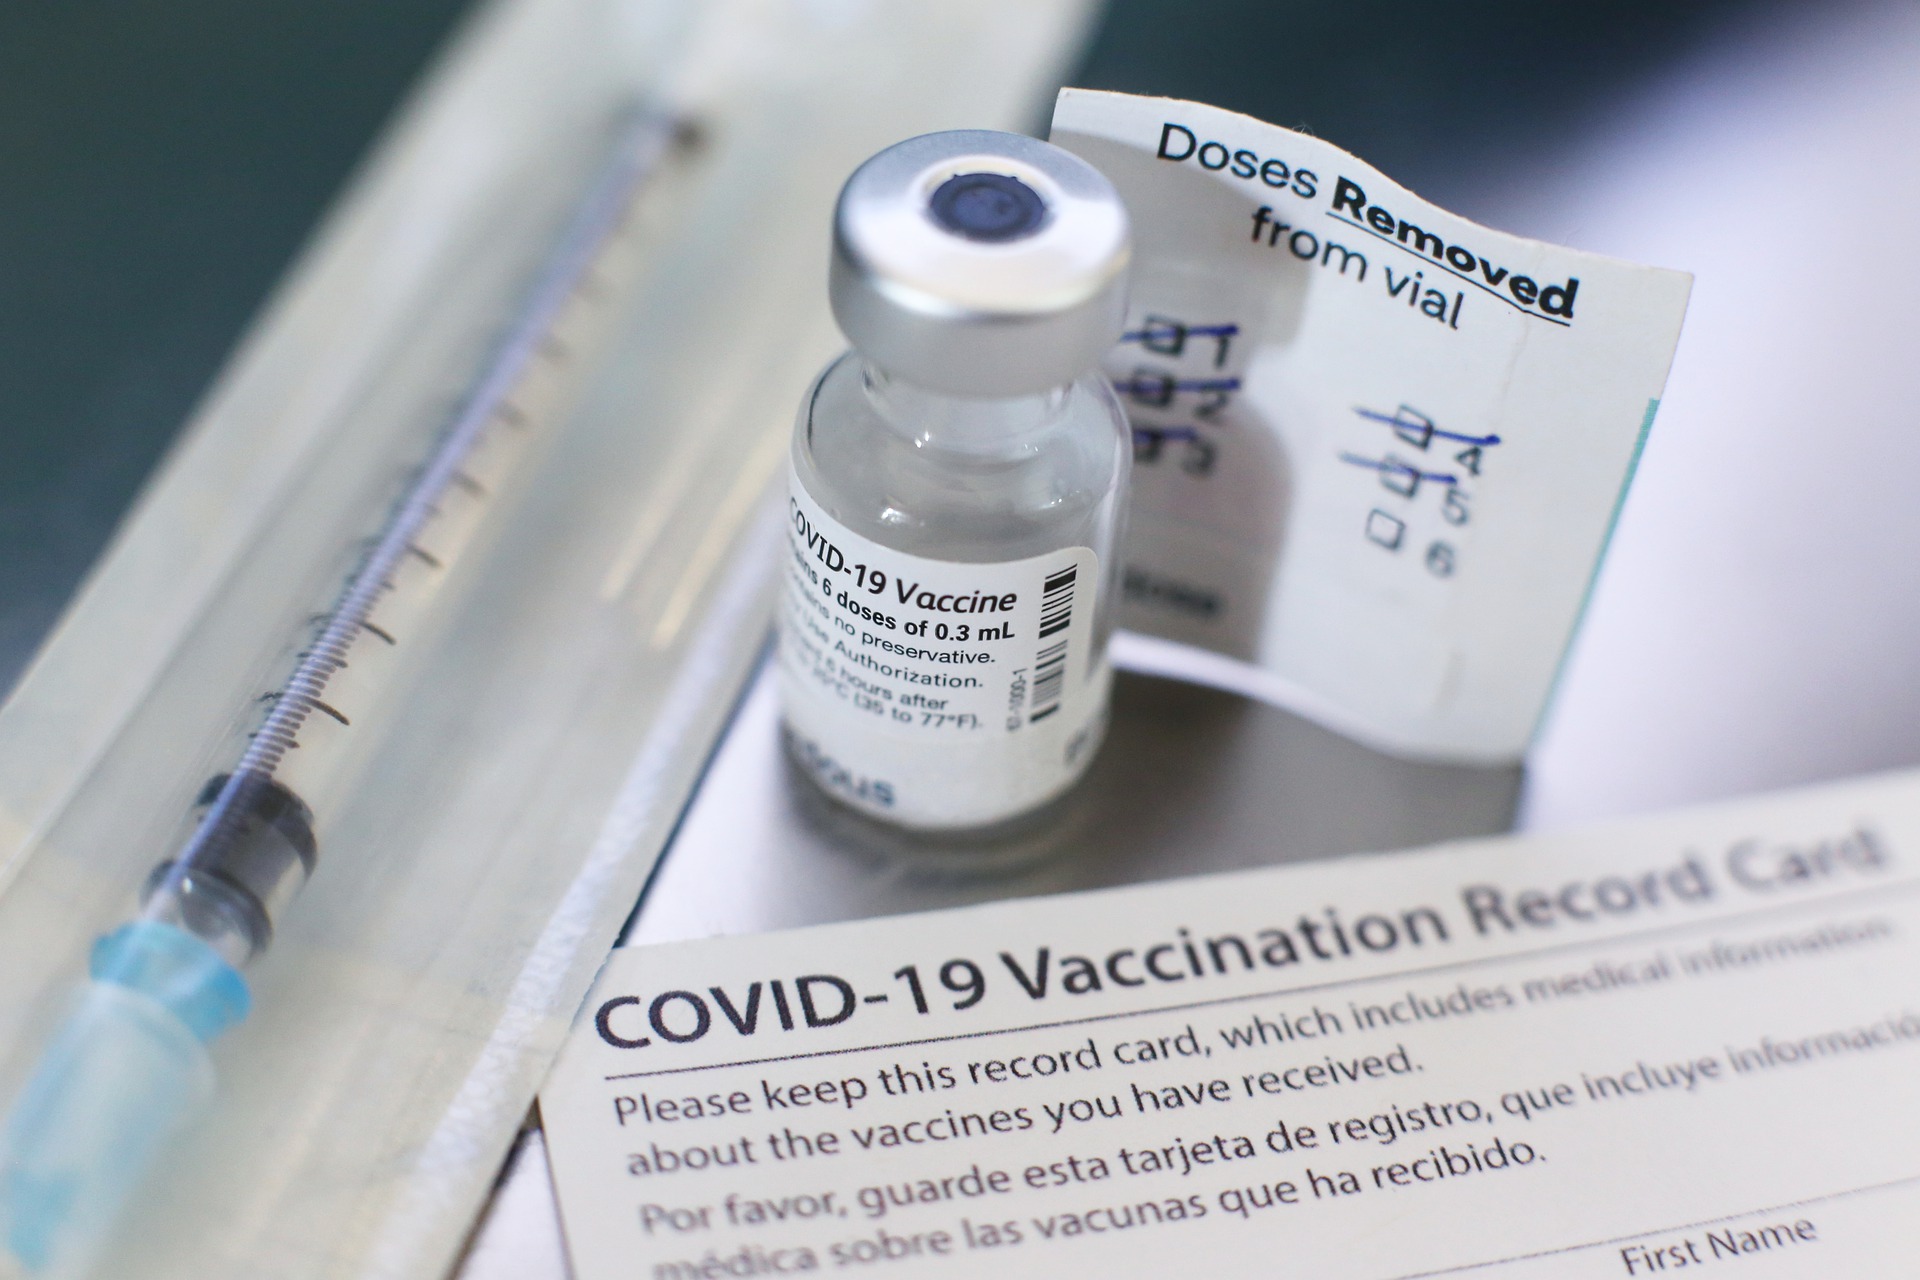 La nuova variante Mu COVID-19 ha mostrato il potenziale di bypassare l'immunità indotta dal vaccino. (Immagine: Justinite tramite Pixabay)